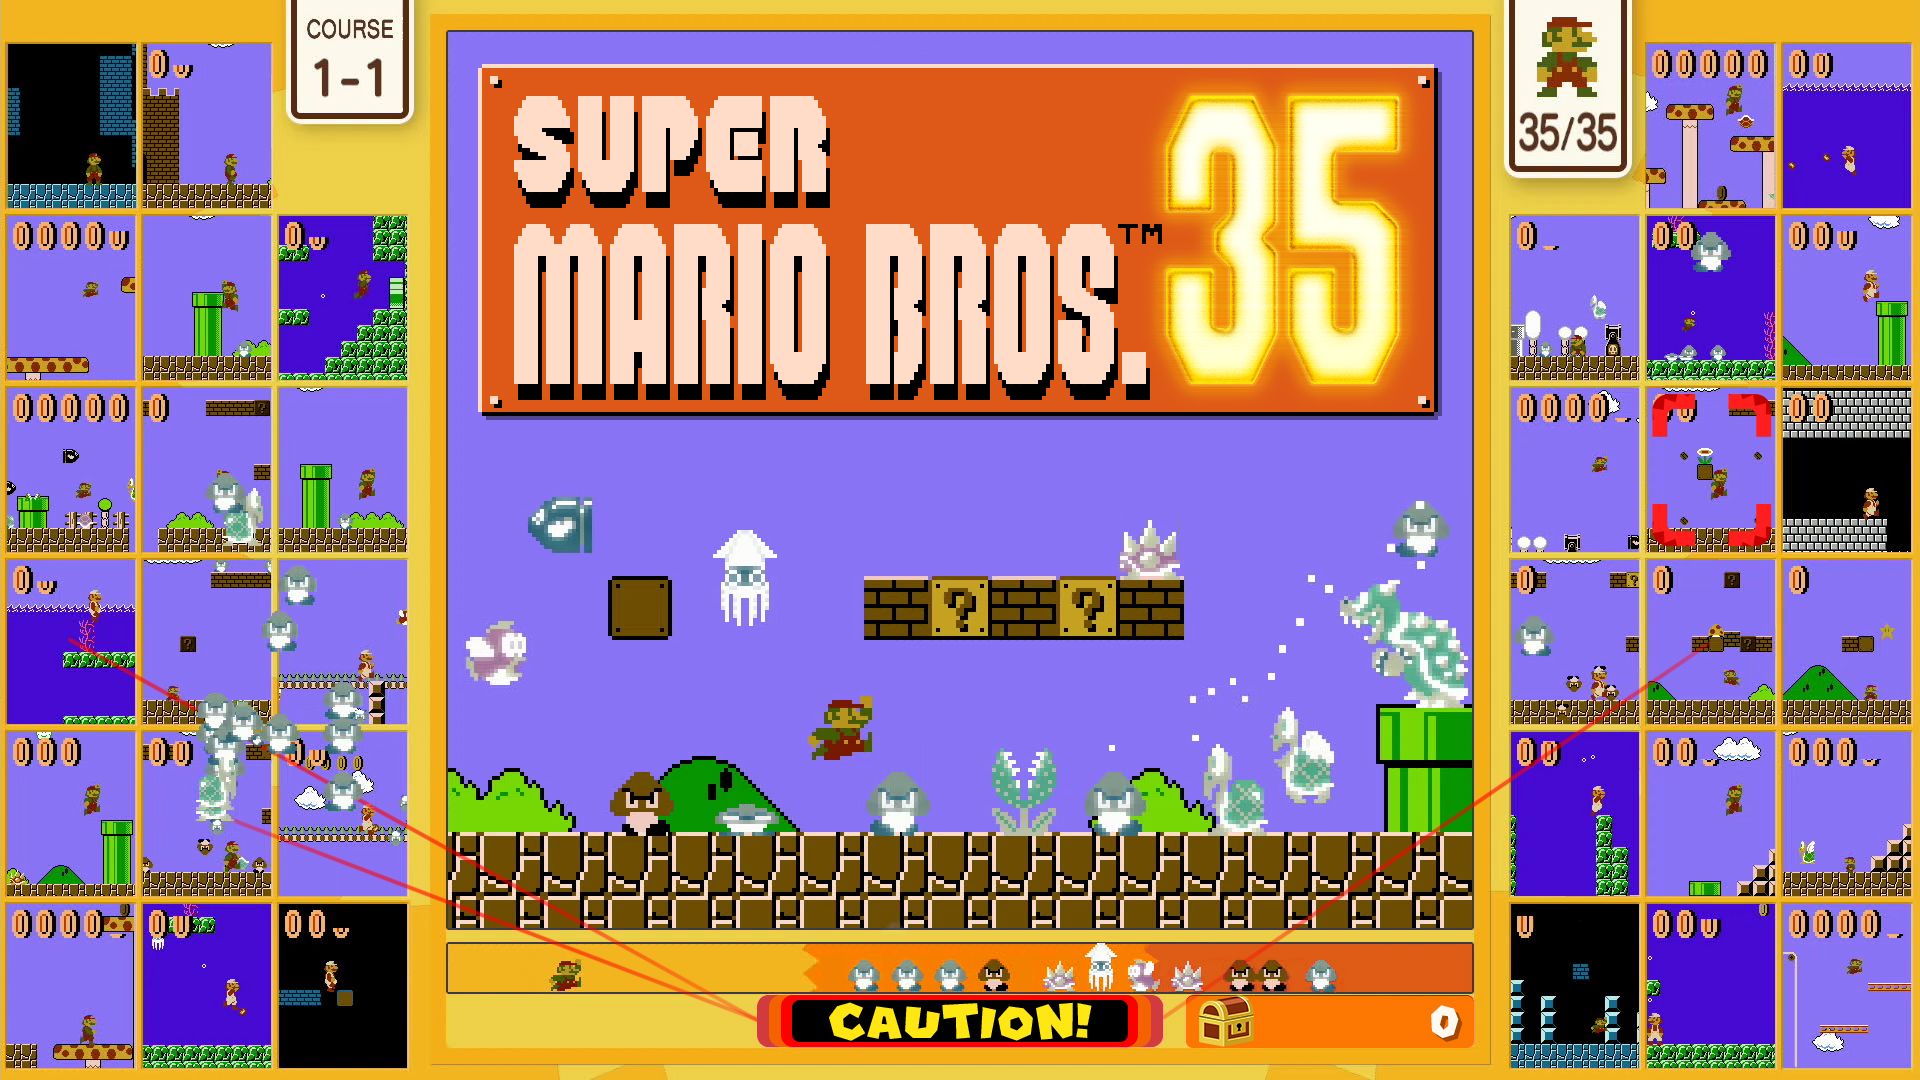 Super Mario Bros. 35 Nintendo Switch Online үшін жарияланды, 1 қазанда қол жетімді